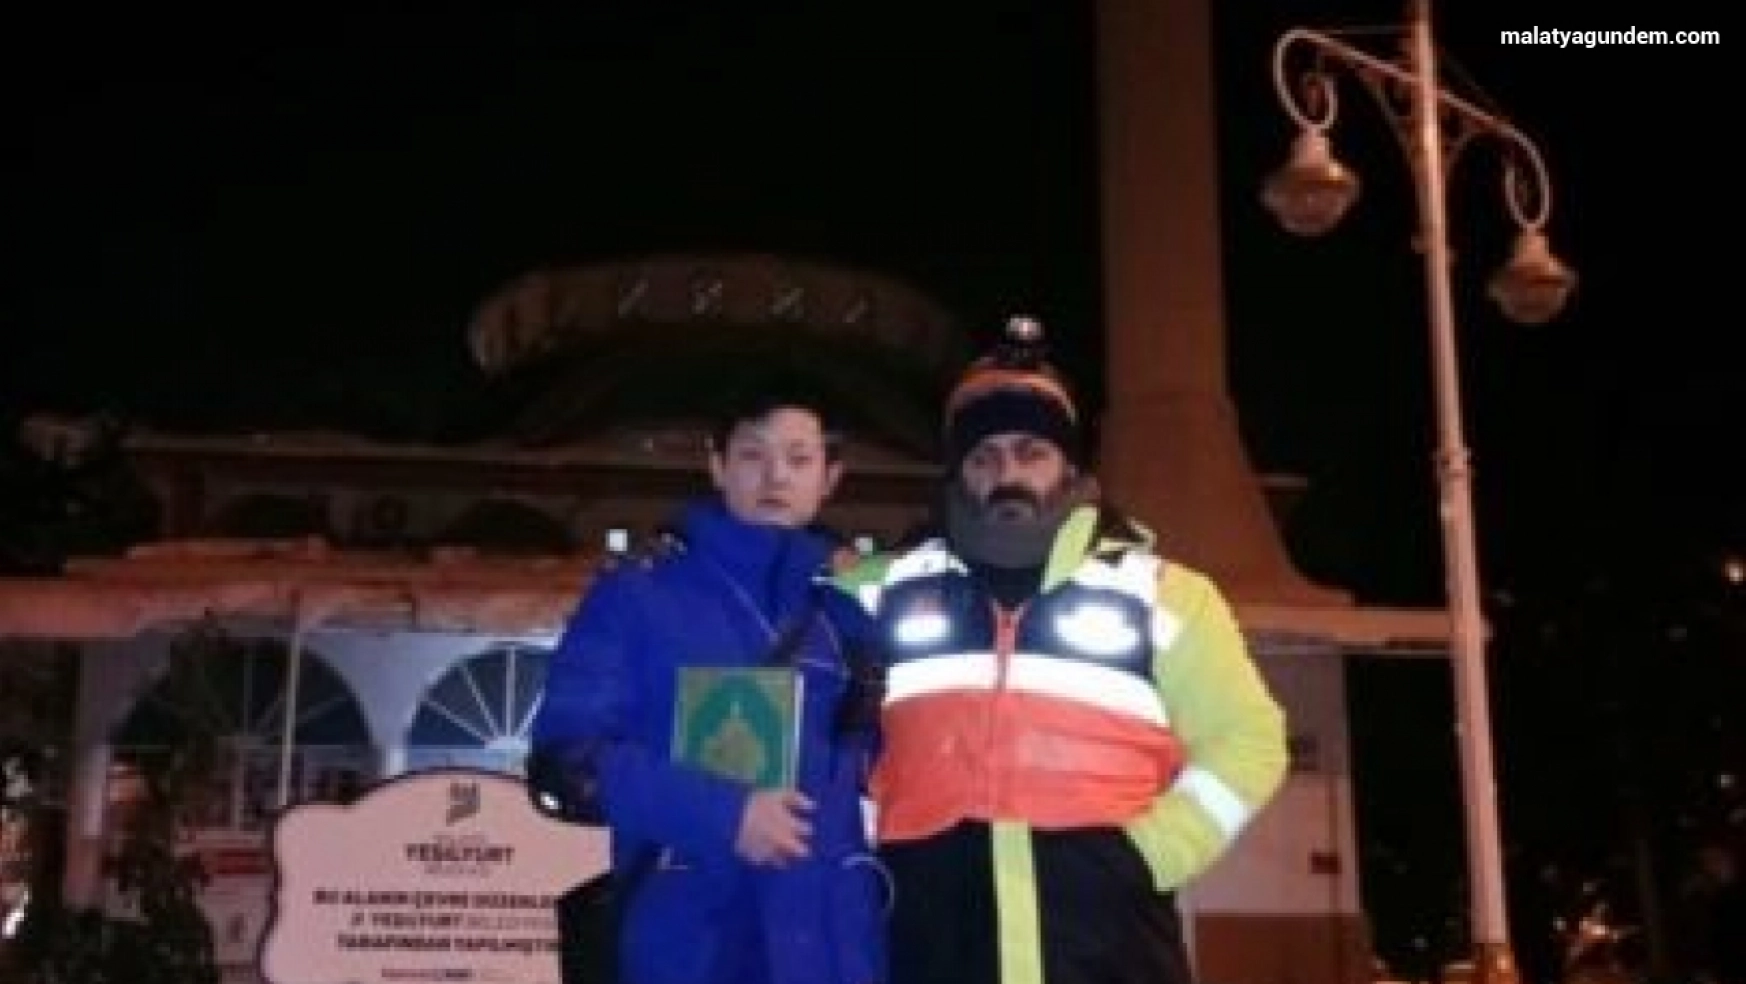 Müslüman olan Çinli kurtarma görevlisi barınma merkezi olarak kullanılan camiye 500 yuan bağışladı